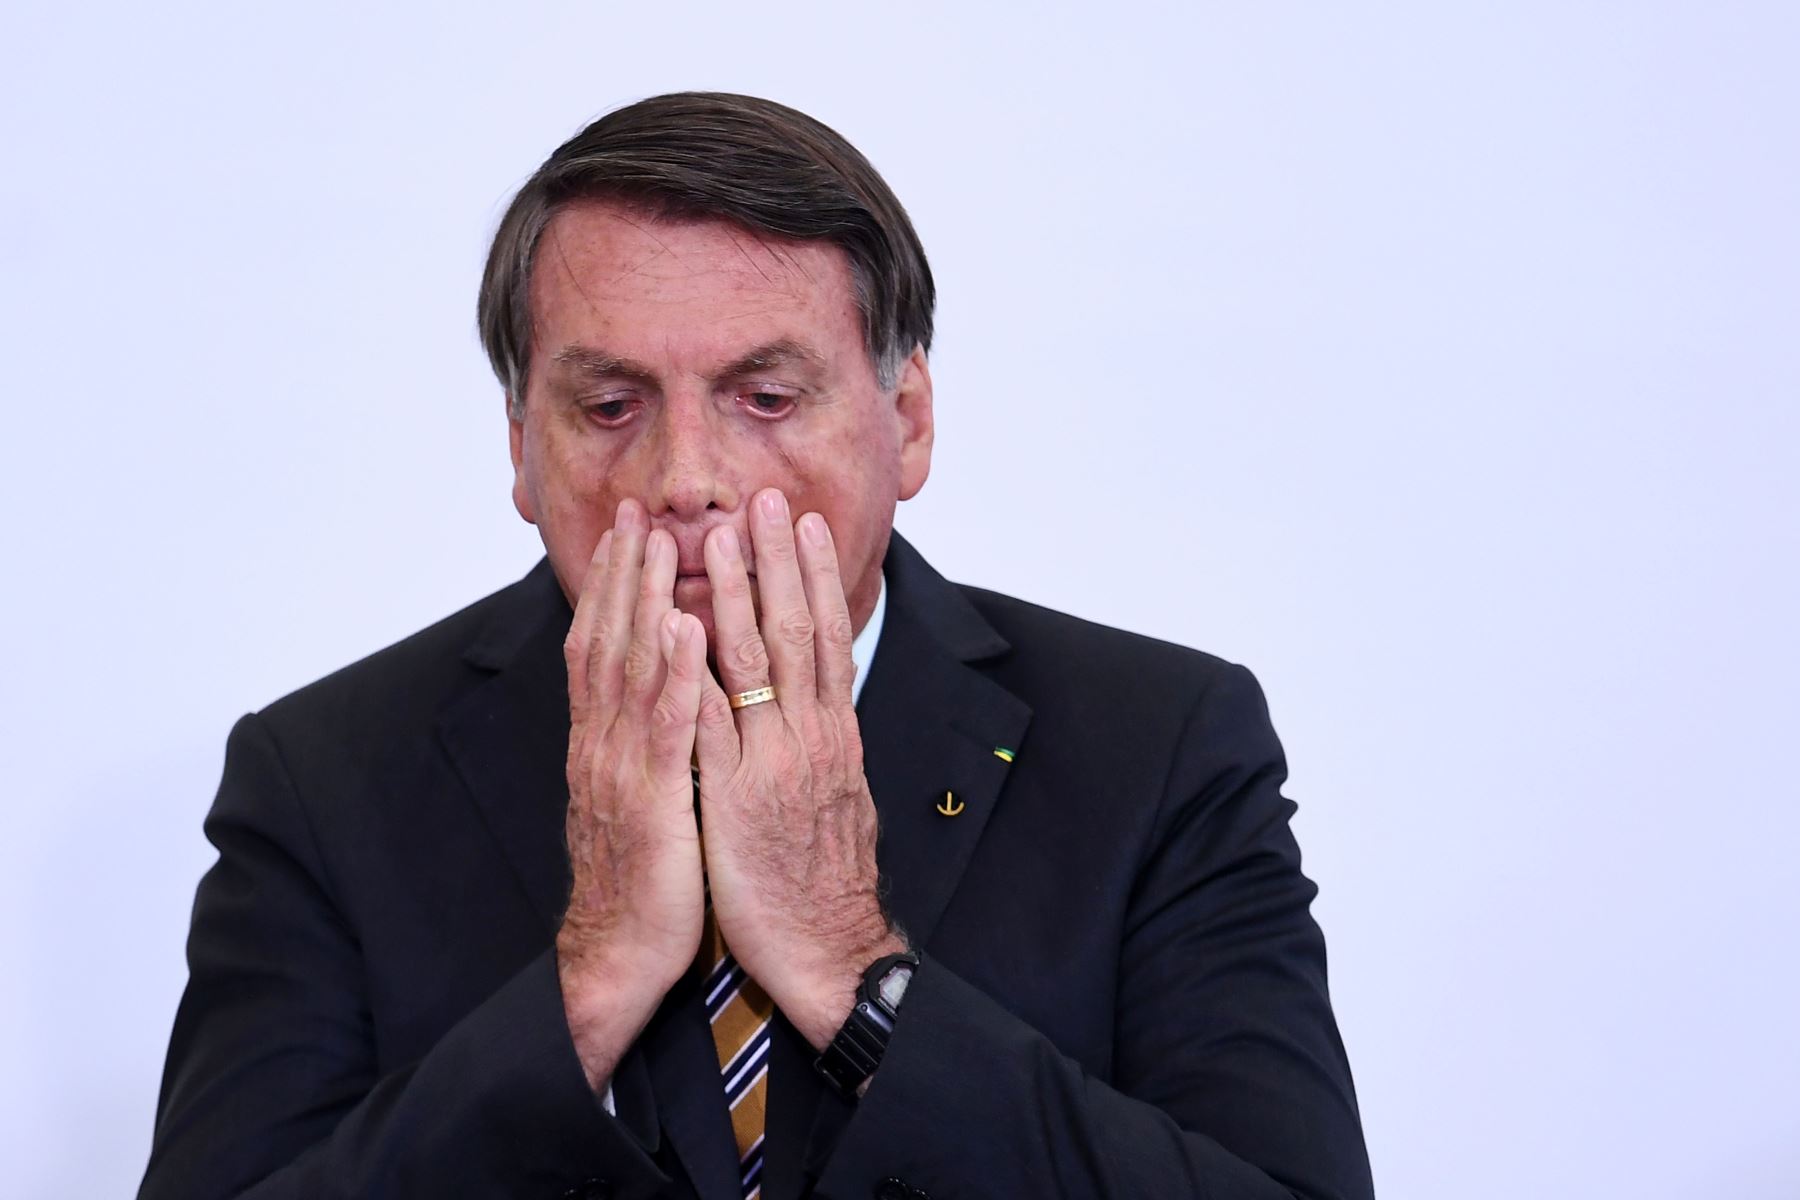 Bolsonaro atribuye el derrumbe económico del país a las medidas de confinamiento preconizadas por los gobernadores para combatir la pandemia de coronavirus, que ya dejó casi 198,000 muertos en Brasil. Foto: AFP